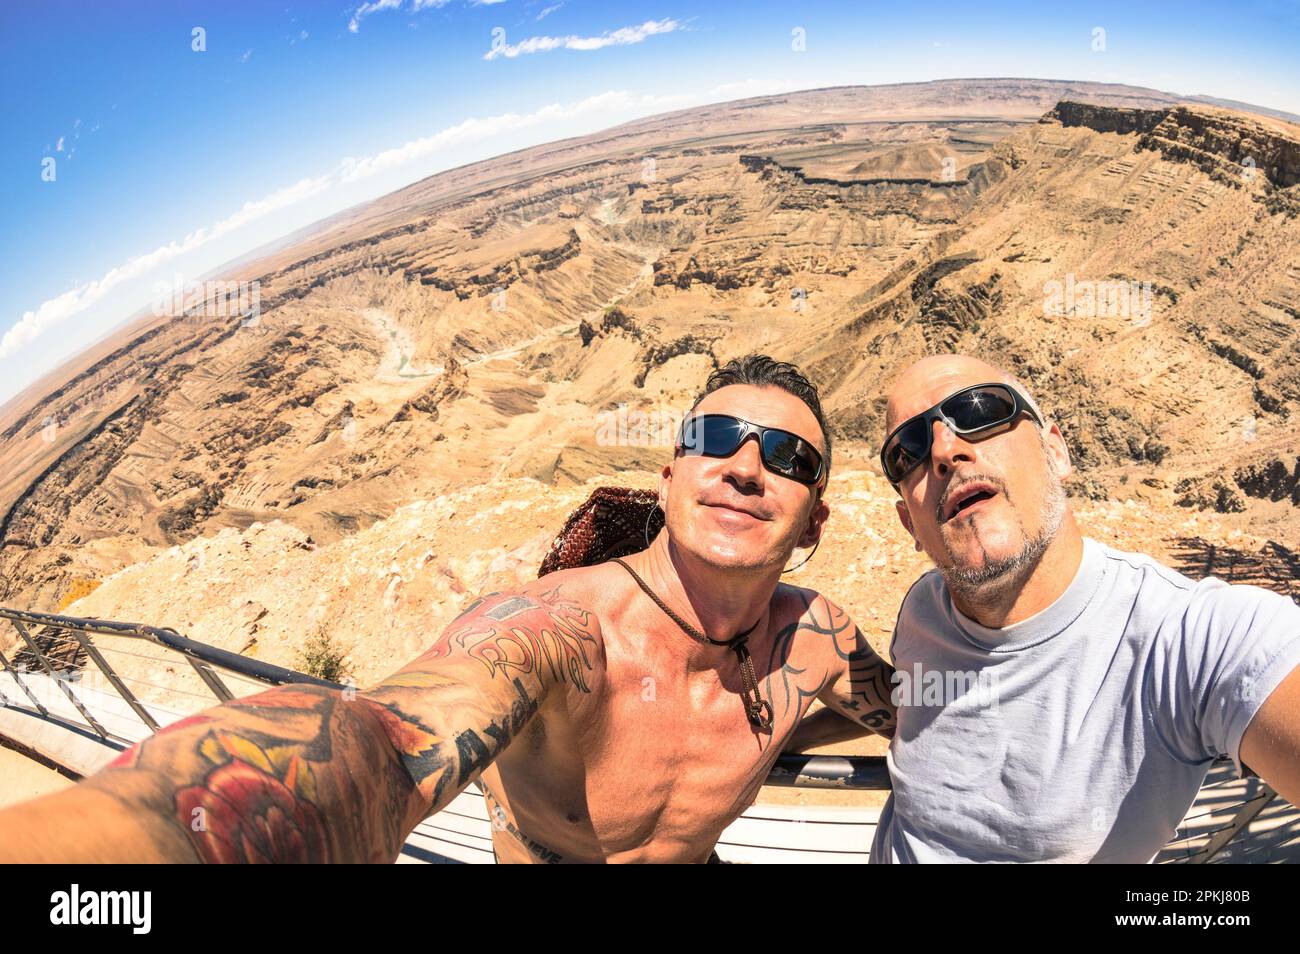 Abenteuerlustige beste Freunde machen Selfie im Fish River Canyon in Namibia - Abenteuerreise Lebensstil Happy Fun Moment genießen - Ausflug zusammen um t Stockfoto